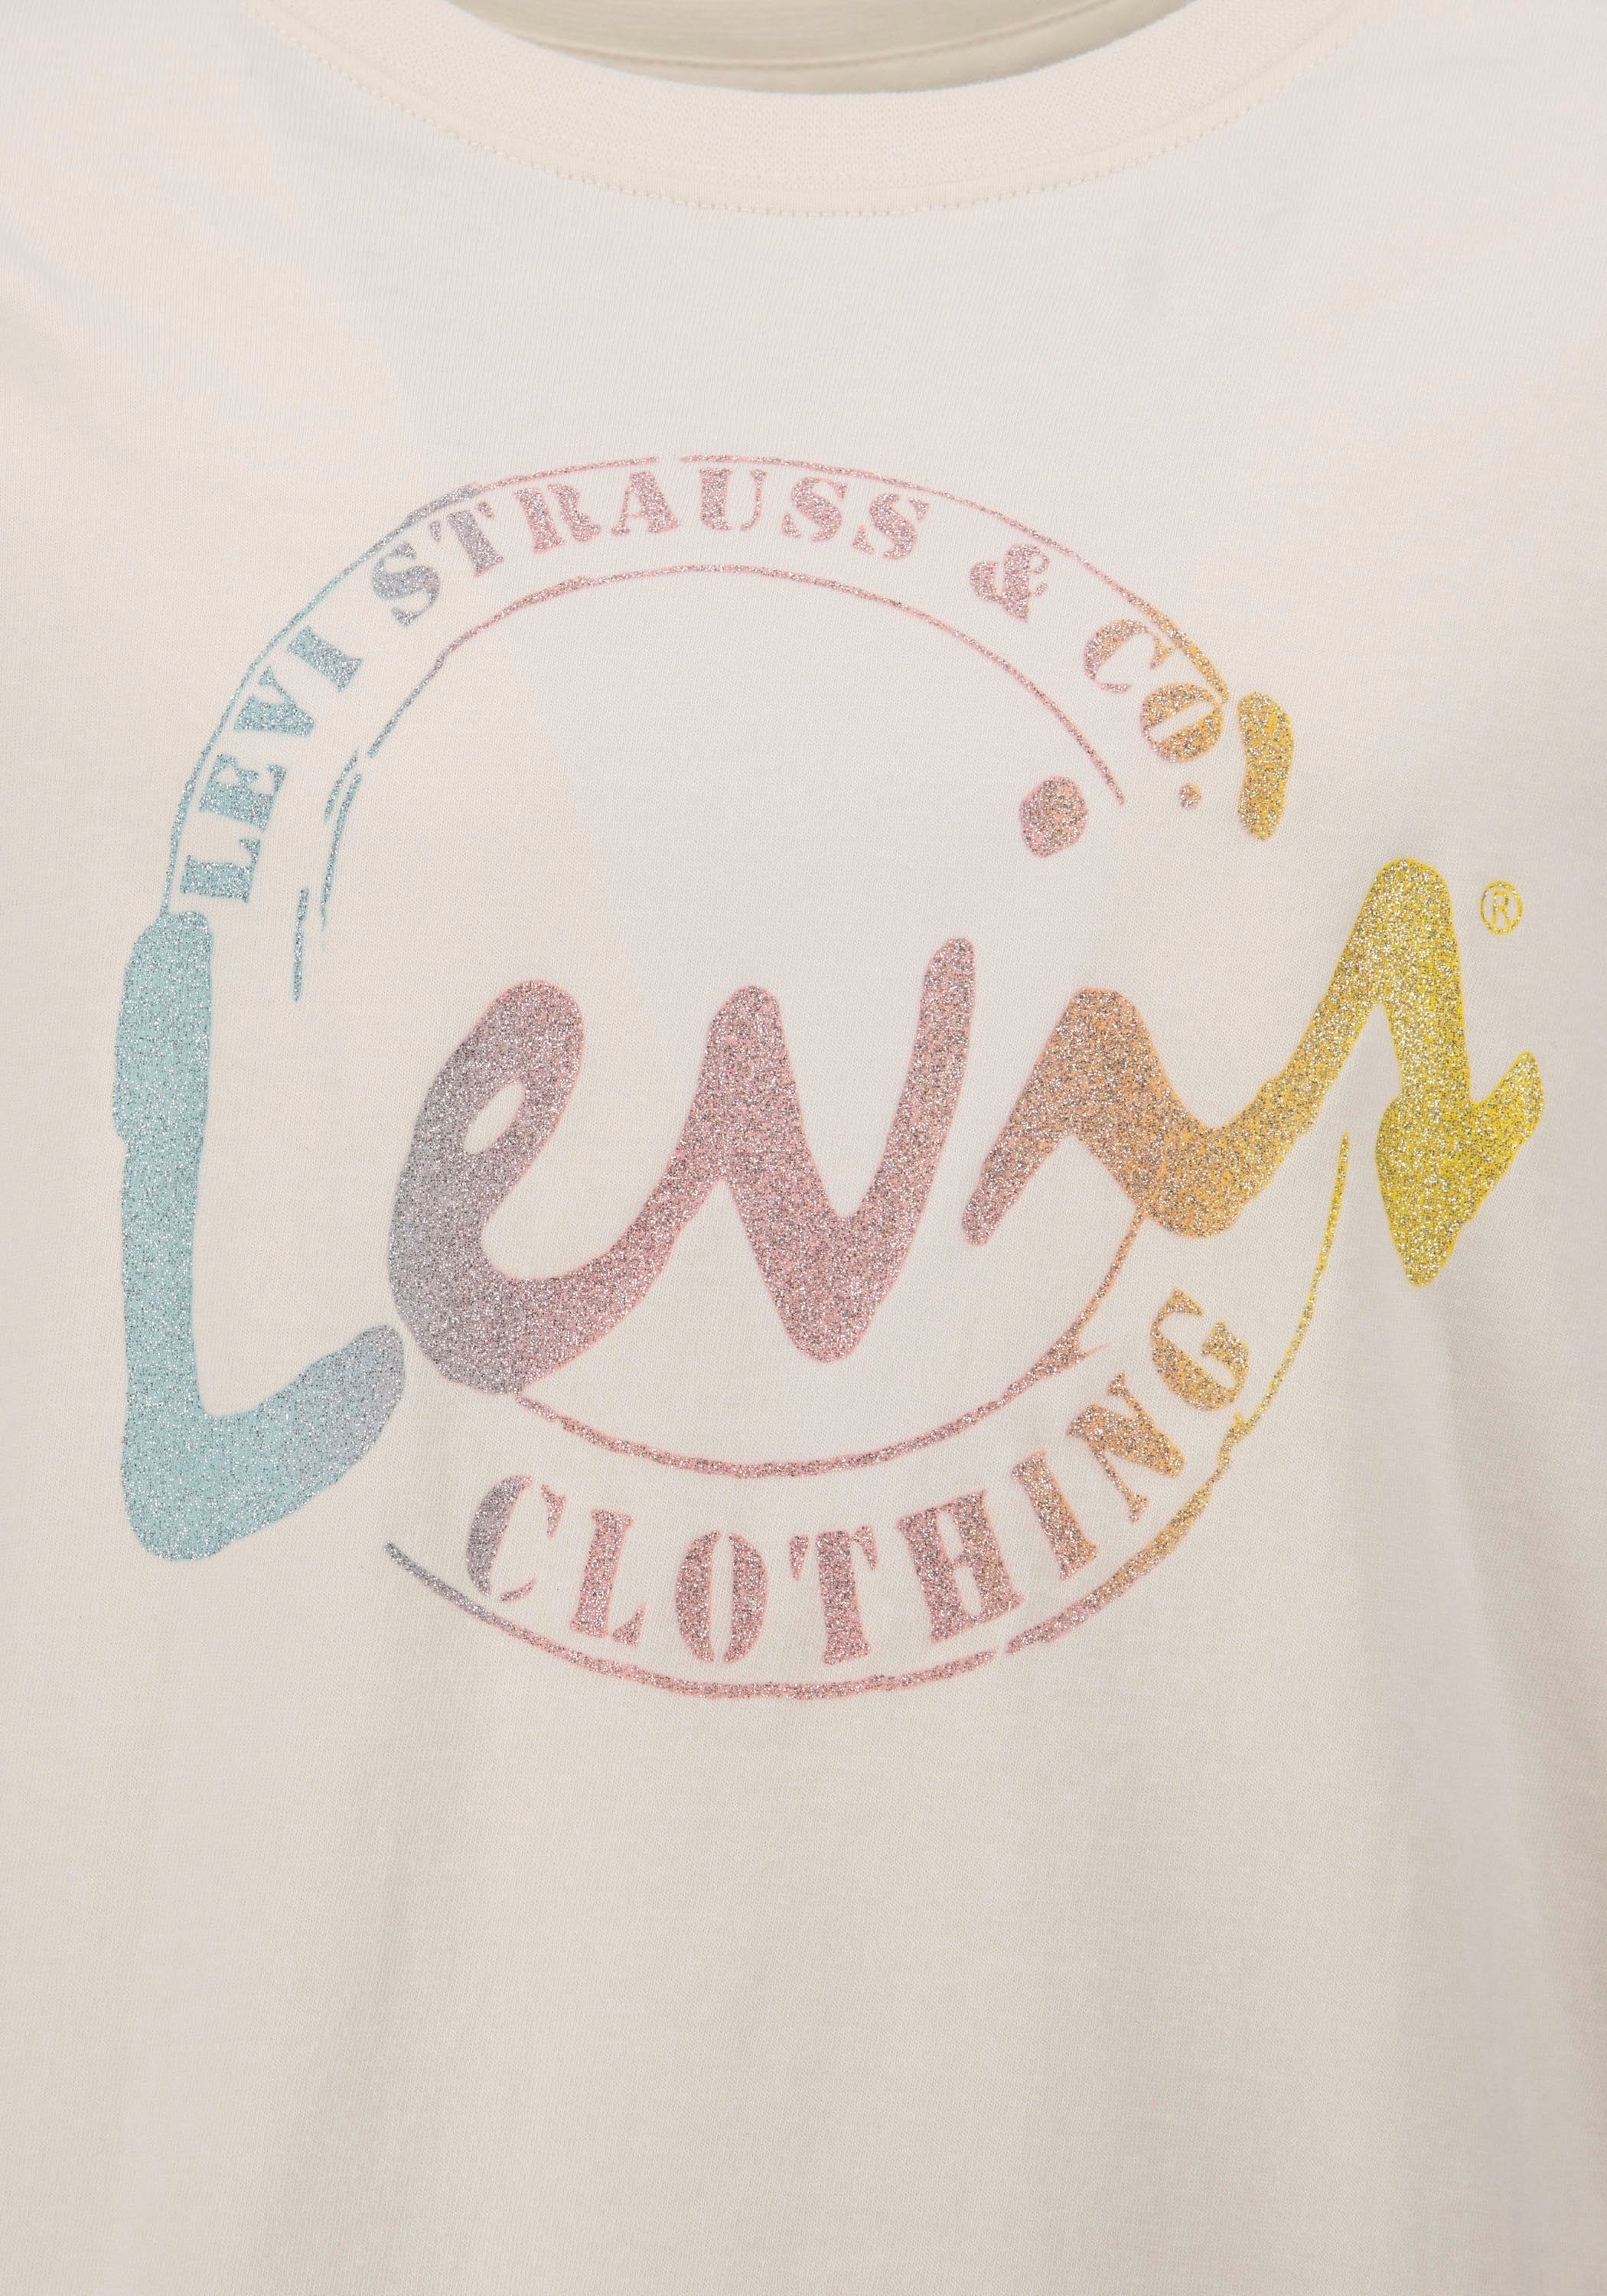 Kids GIRLS T-Shirt for Levi's® MEET AND GREET SCRIPT